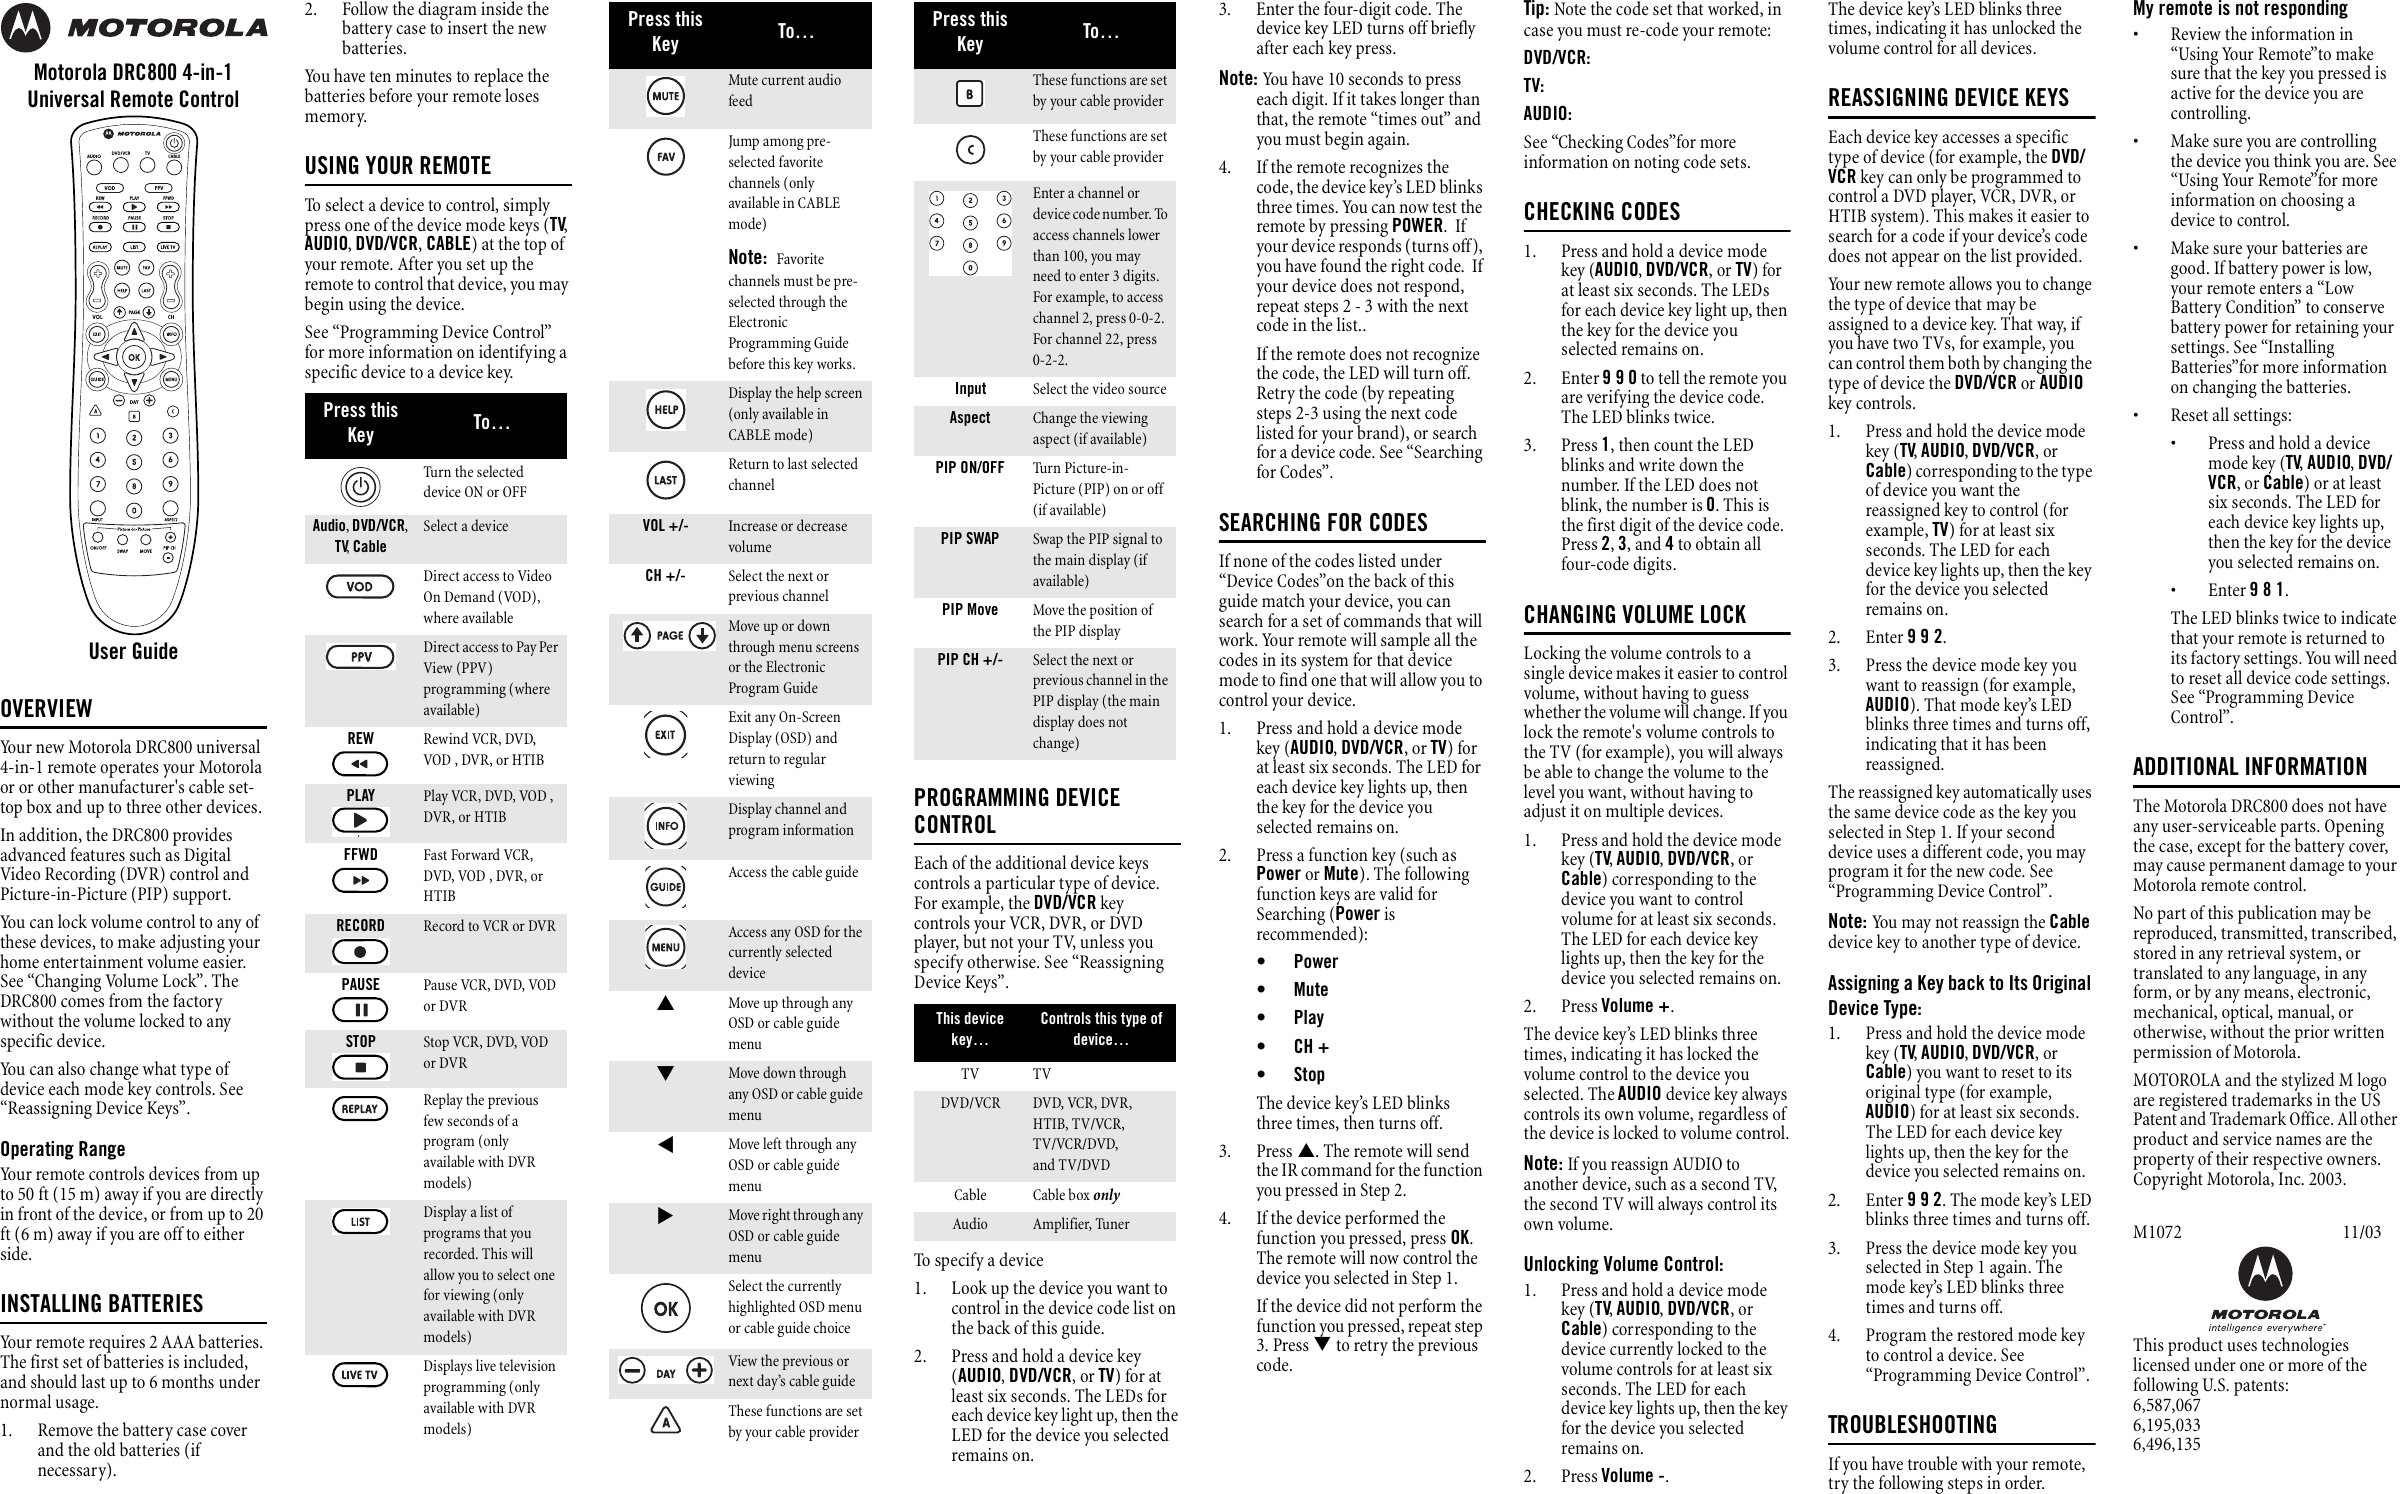 Page 1 of 2 - Motorola Motorola-Motorola-Universal-Remote-Drc800-Users-Manual- PVR Remote User Guide (PDF)  Motorola-motorola-universal-remote-drc800-users-manual